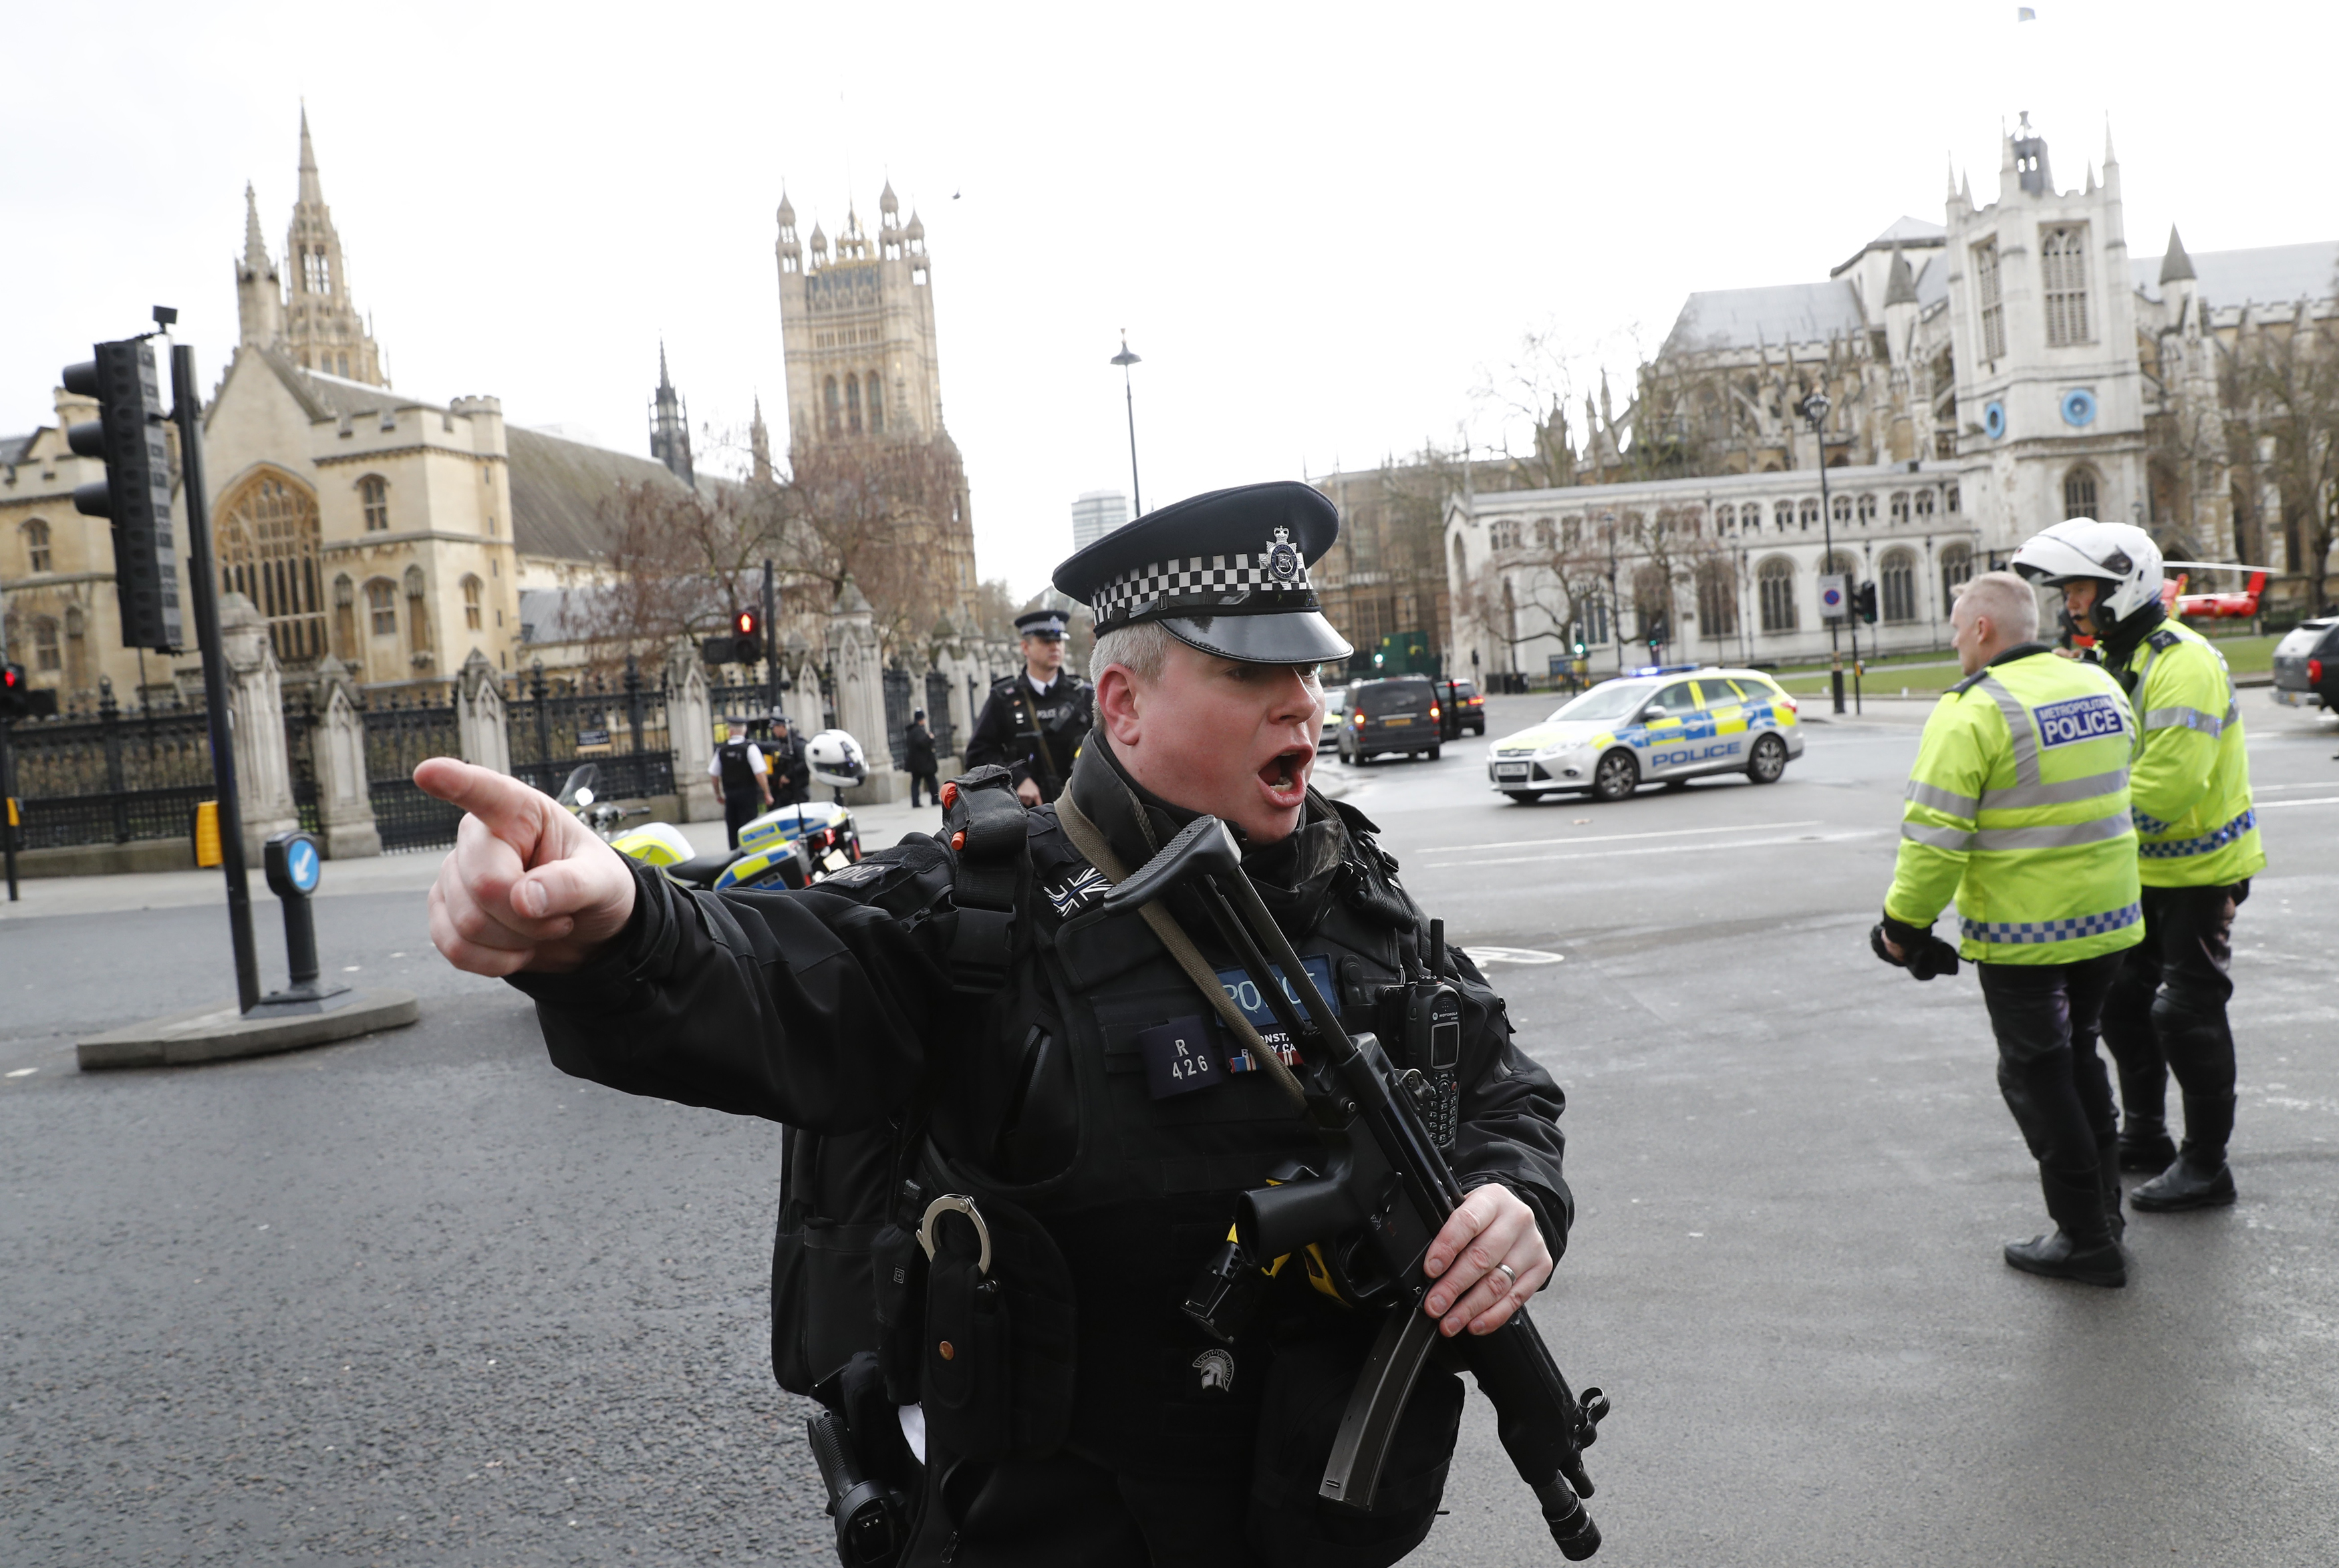 El atentado de Londres, en imágenes 15